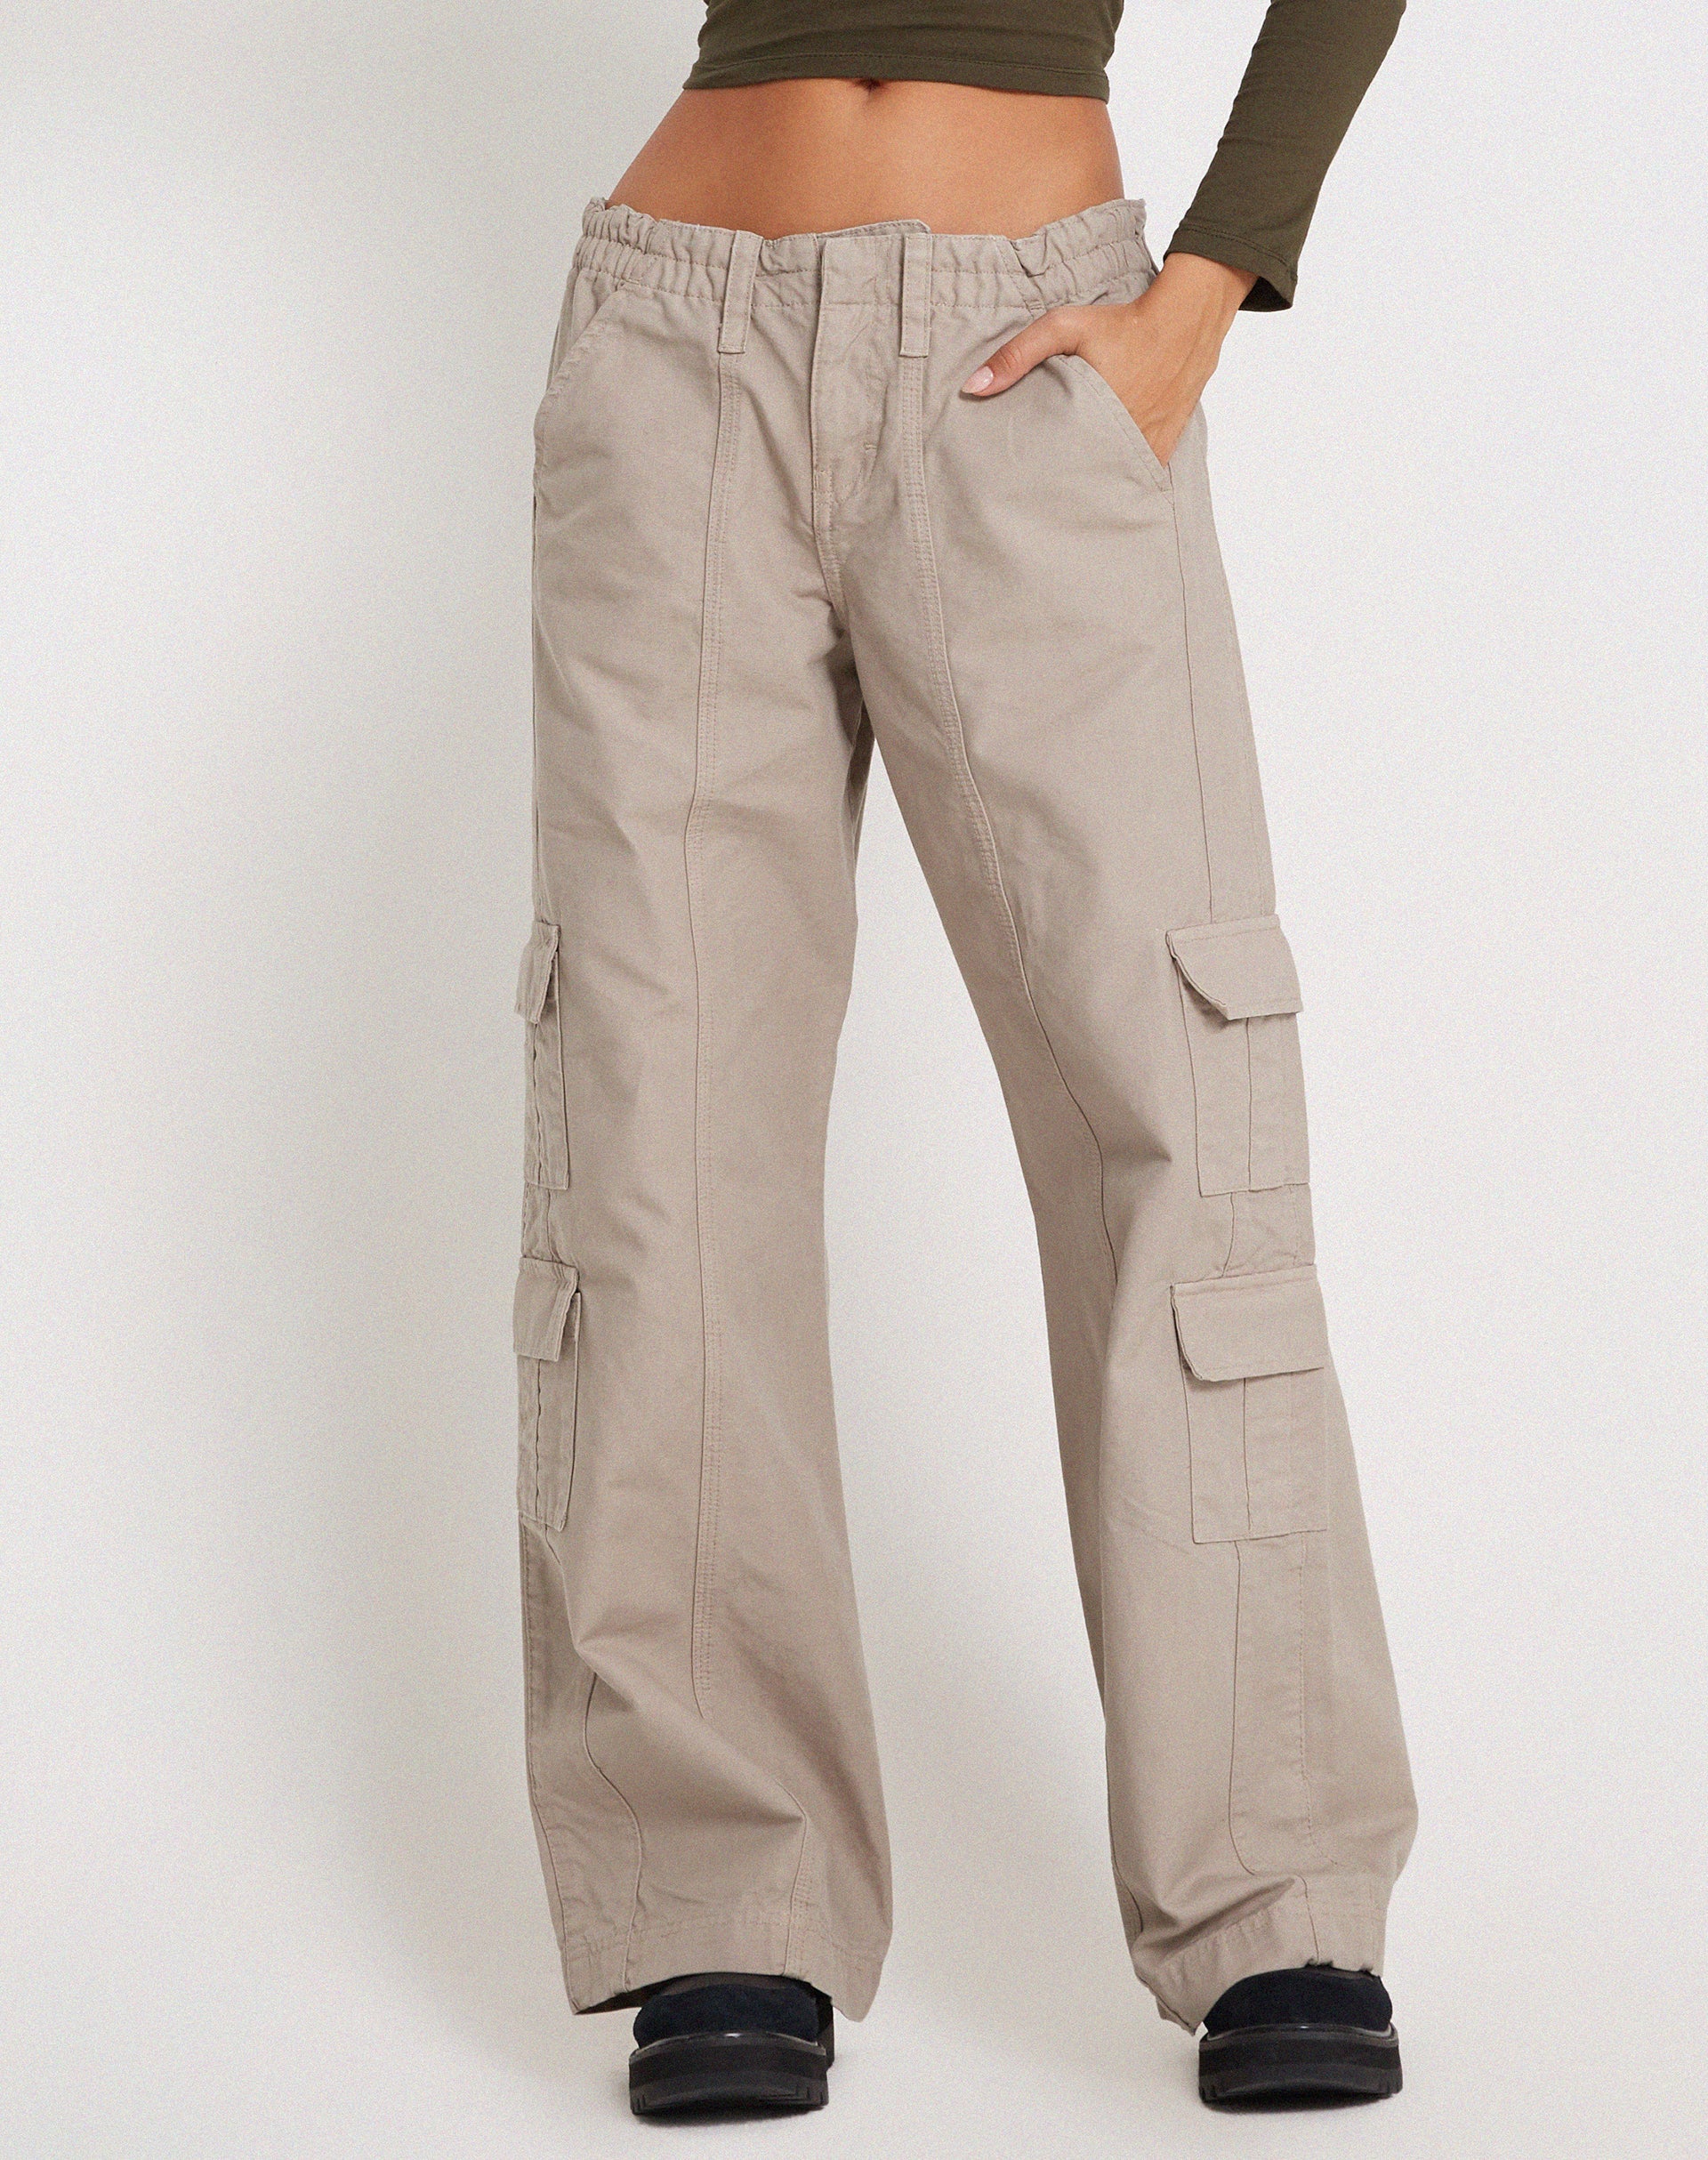 Best Deal for HUANKD Cargo Pants for Women, Beige Pants Women Grey